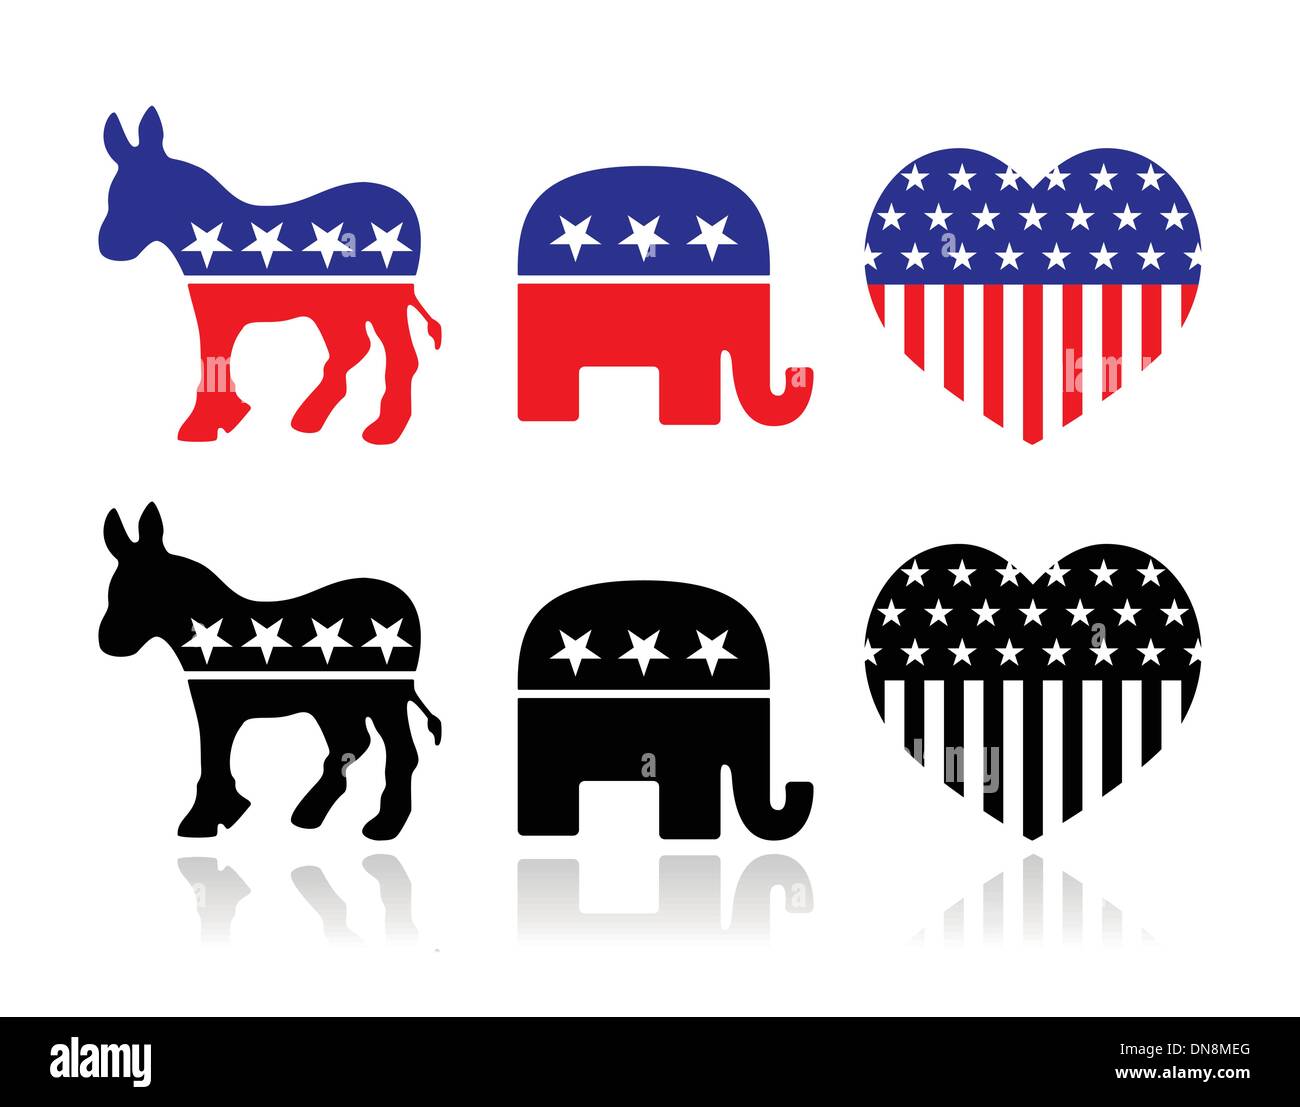 USA political parties symbols: democrats and repbublicans Stock Vector